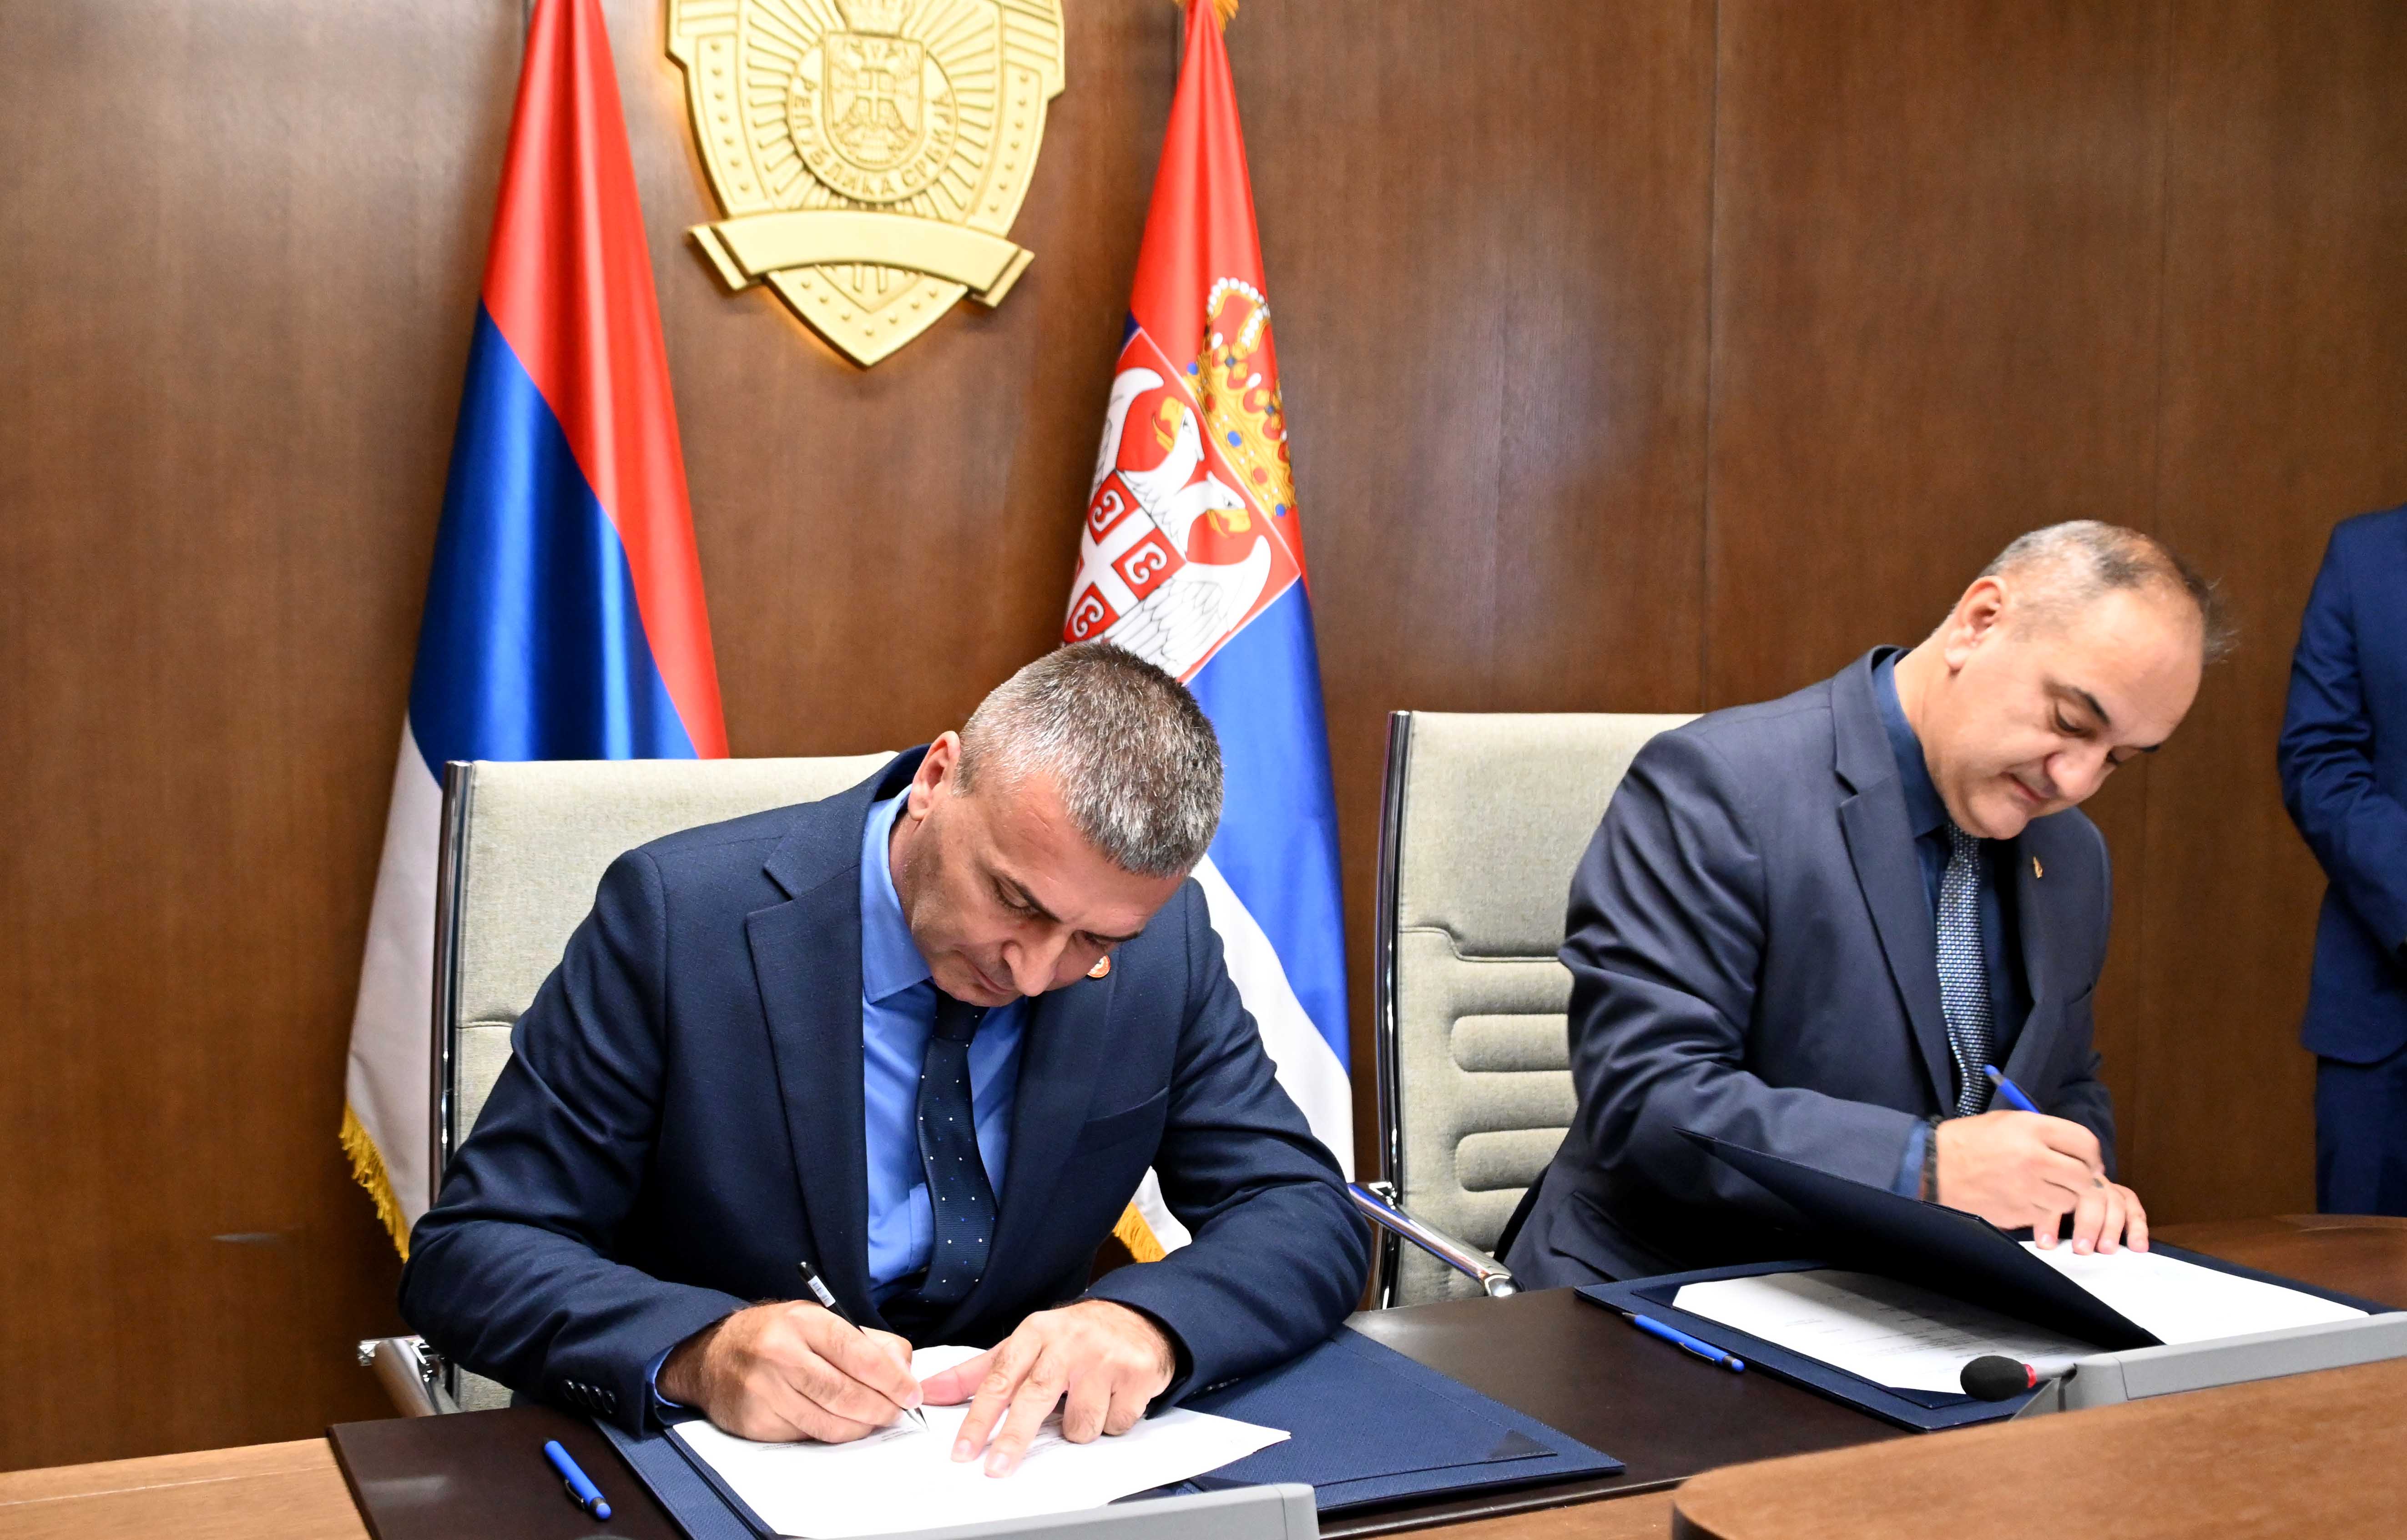 Potpisan ugovor o kupoprodaji helikoptera Bell 206 B MUP-a Republike Srbije i Republičke uprave civilne zaštite Republike Srpske